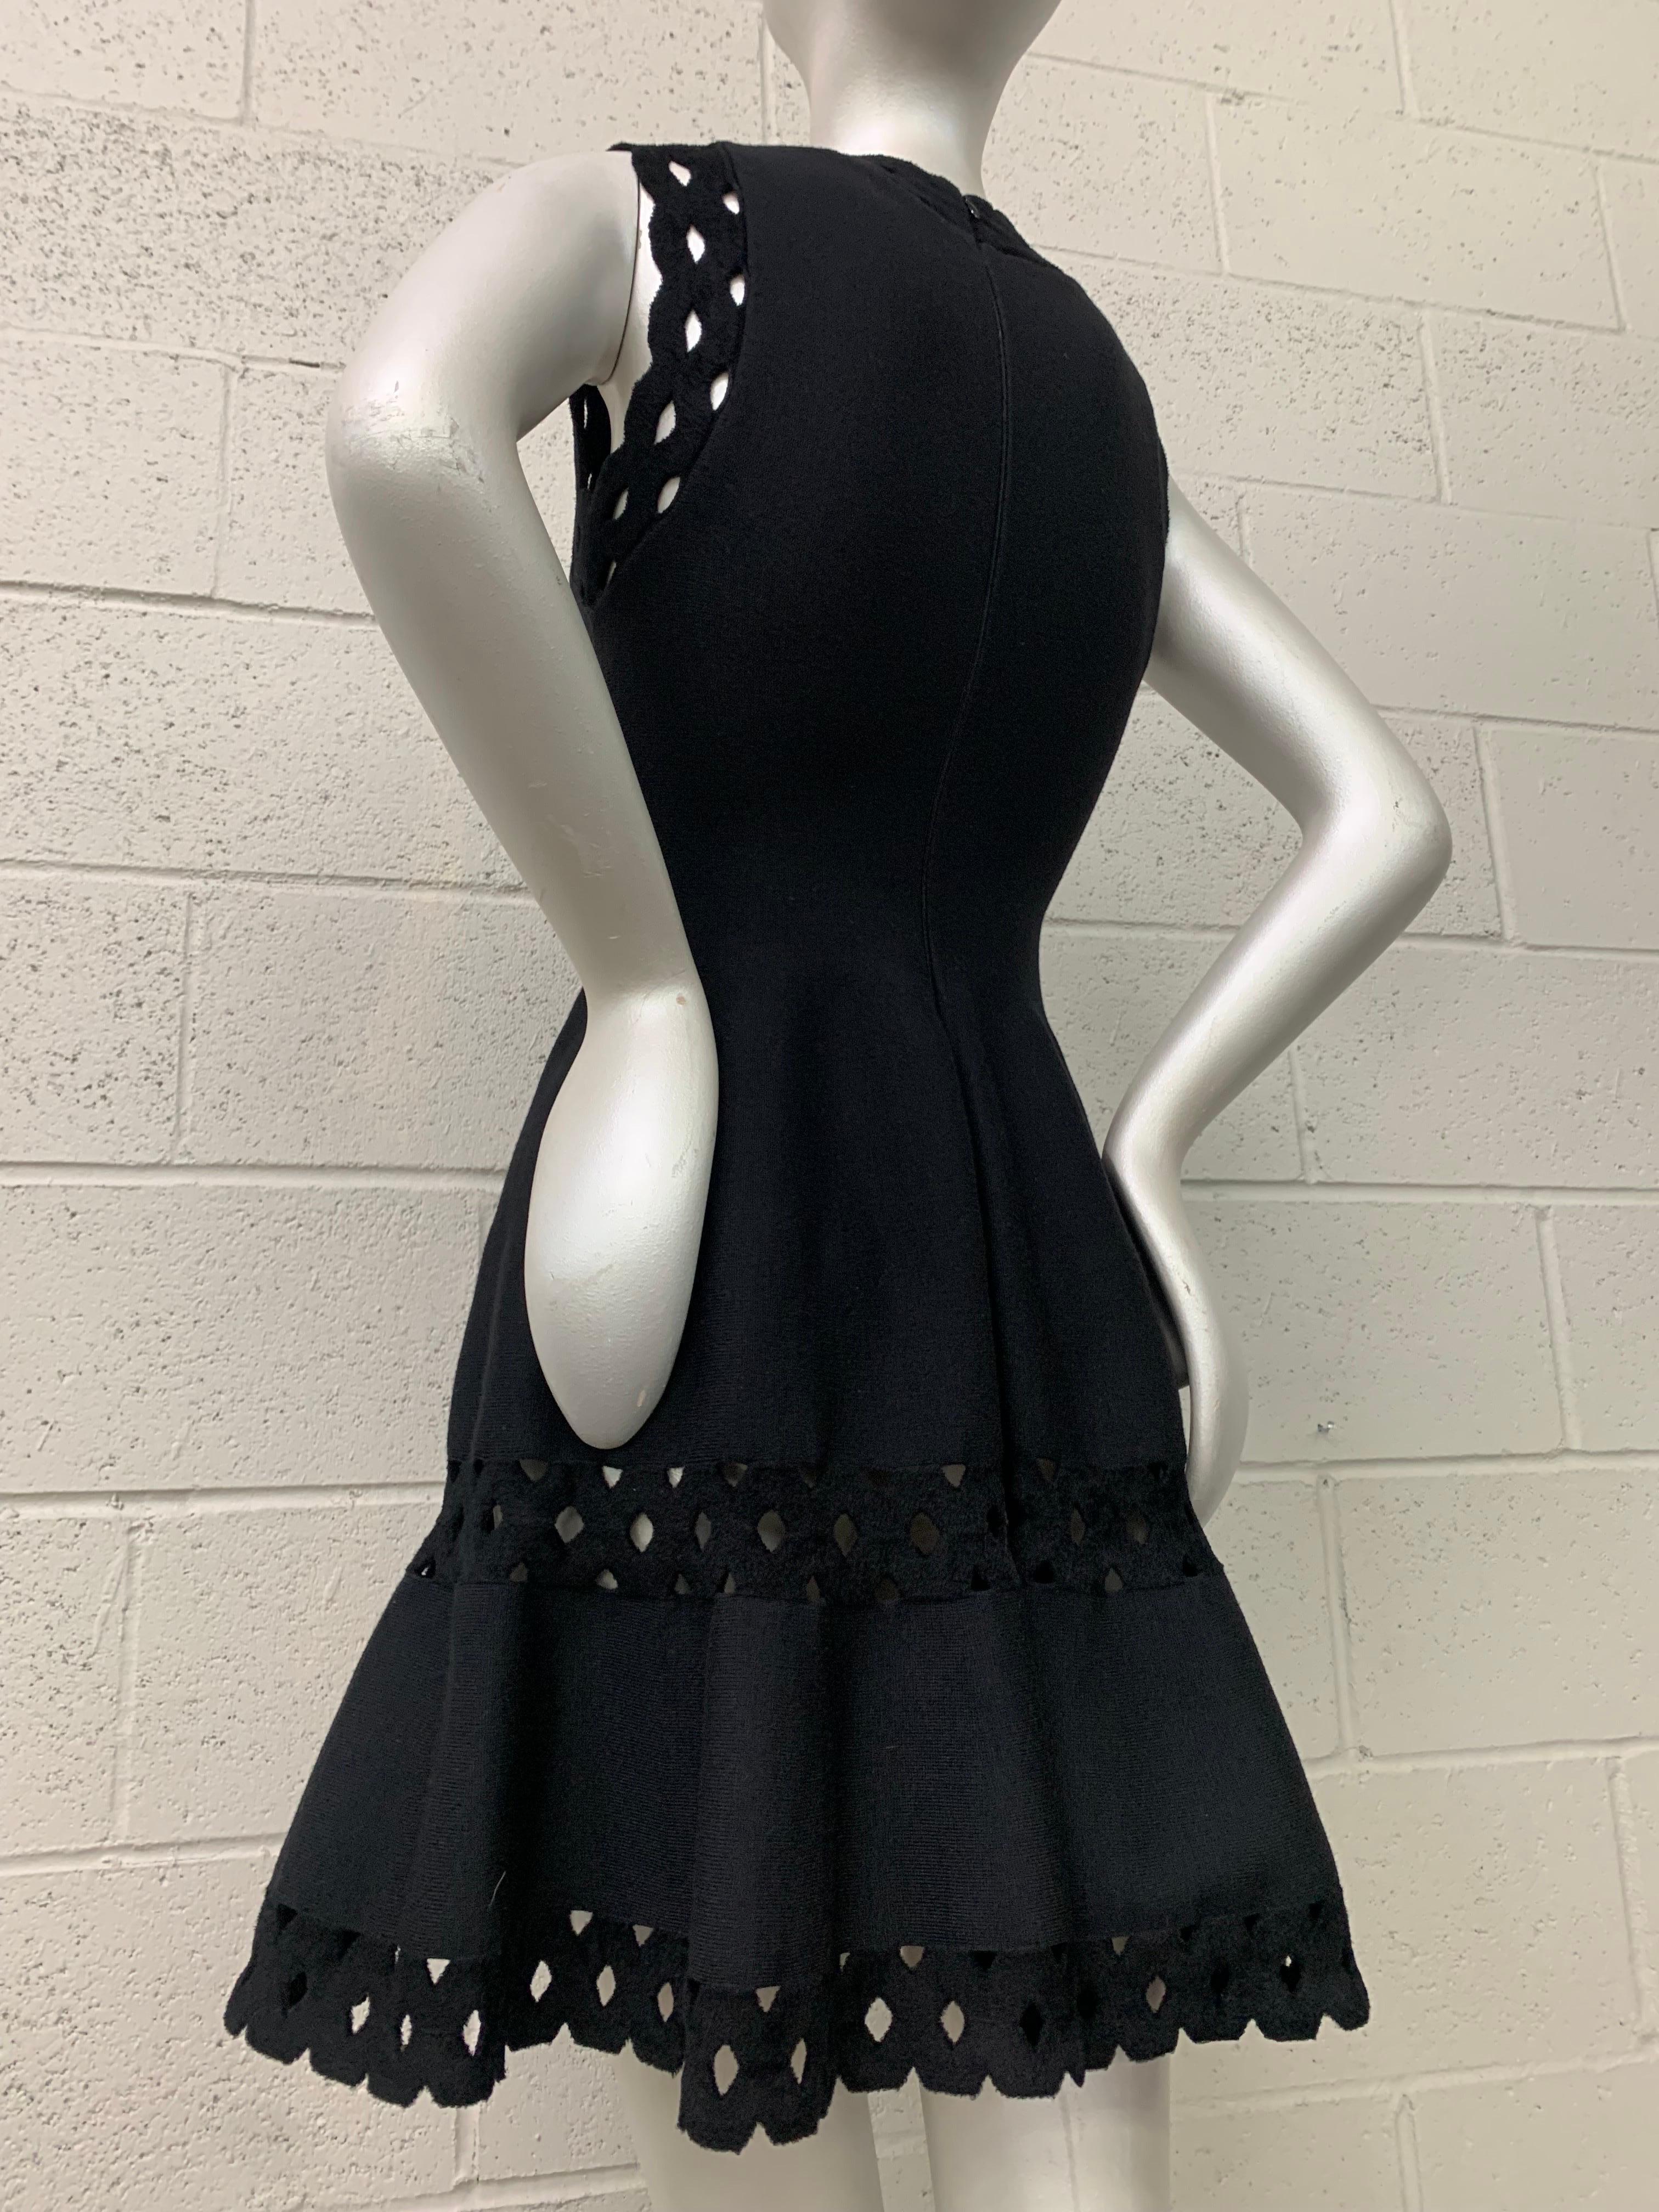 Alaia Black 1950s-Inspired Little Black Dress w Full Skirt Eyelet Hem & Inserts For Sale 2